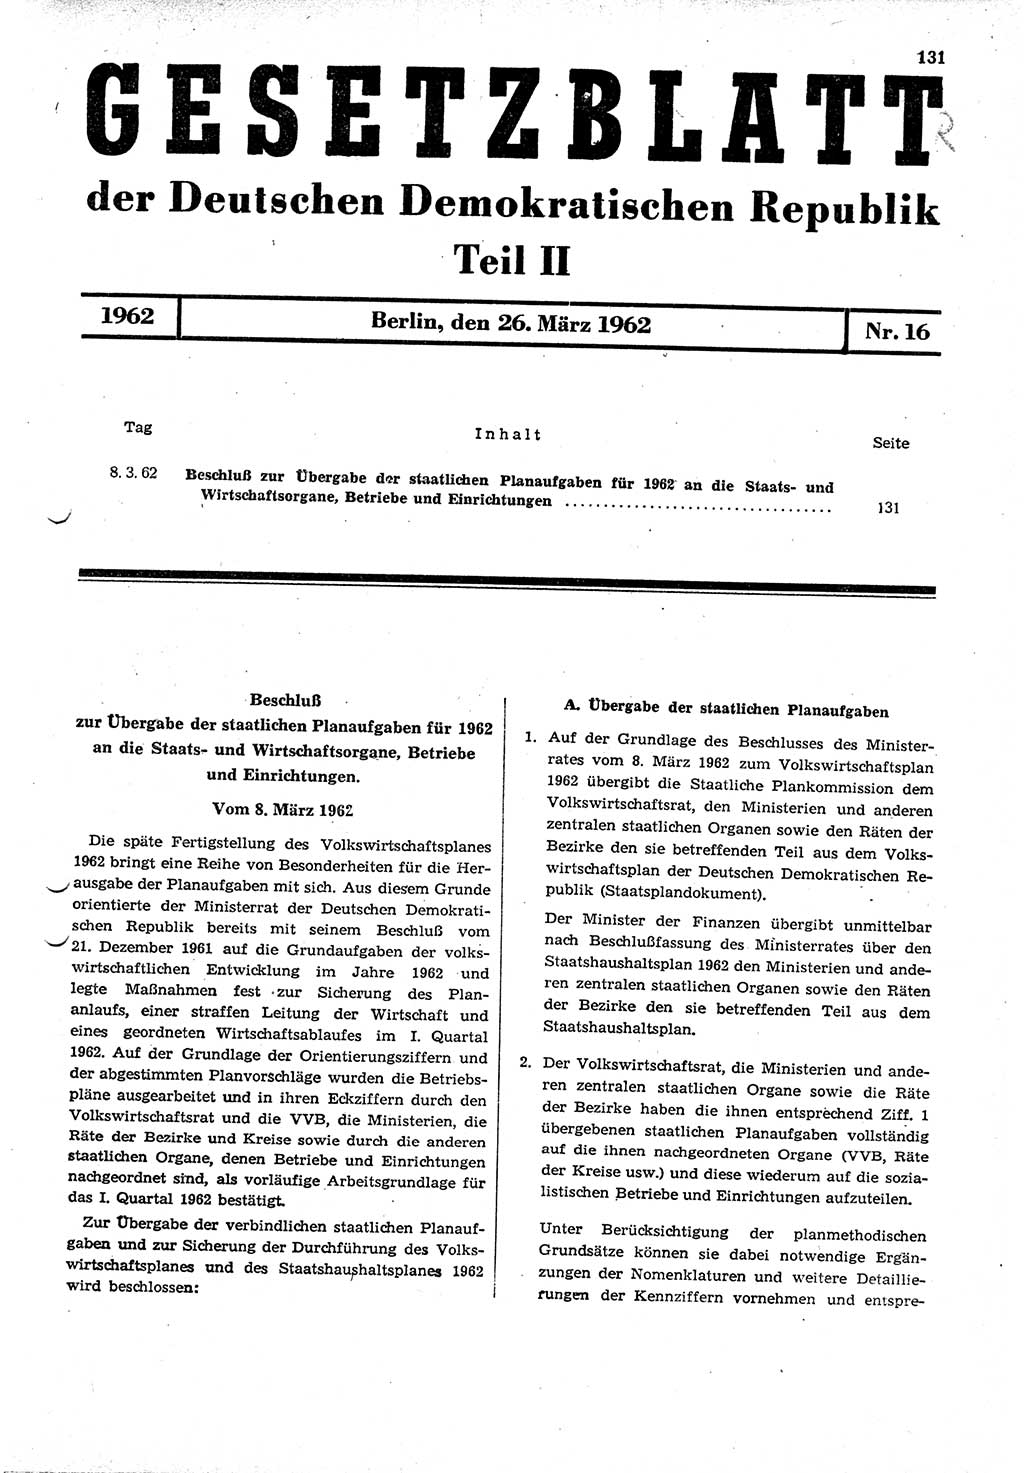 Gesetzblatt (GBl.) der Deutschen Demokratischen Republik (DDR) Teil ⅠⅠ 1962, Seite 131 (GBl. DDR ⅠⅠ 1962, S. 131)